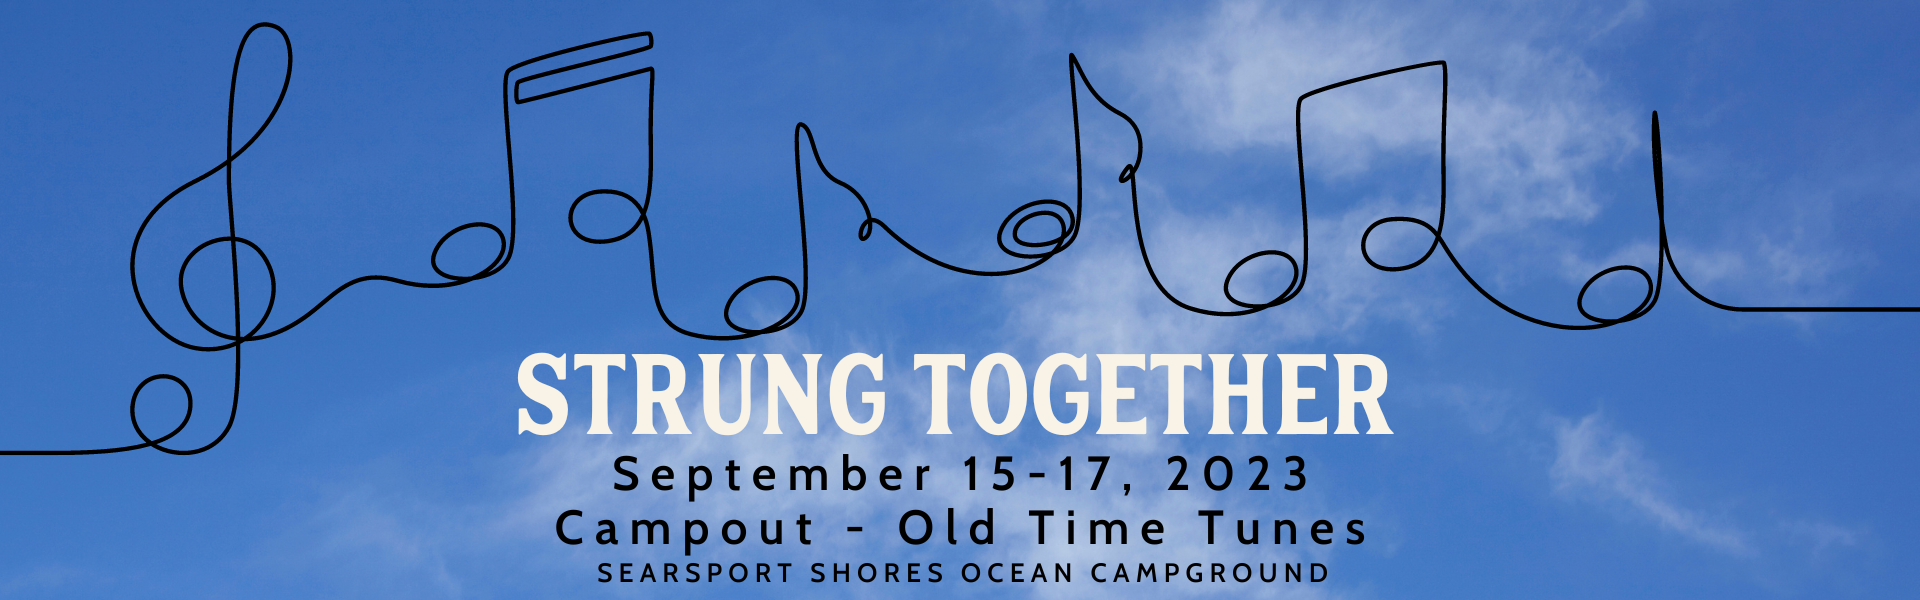 Strung Together Banner Image